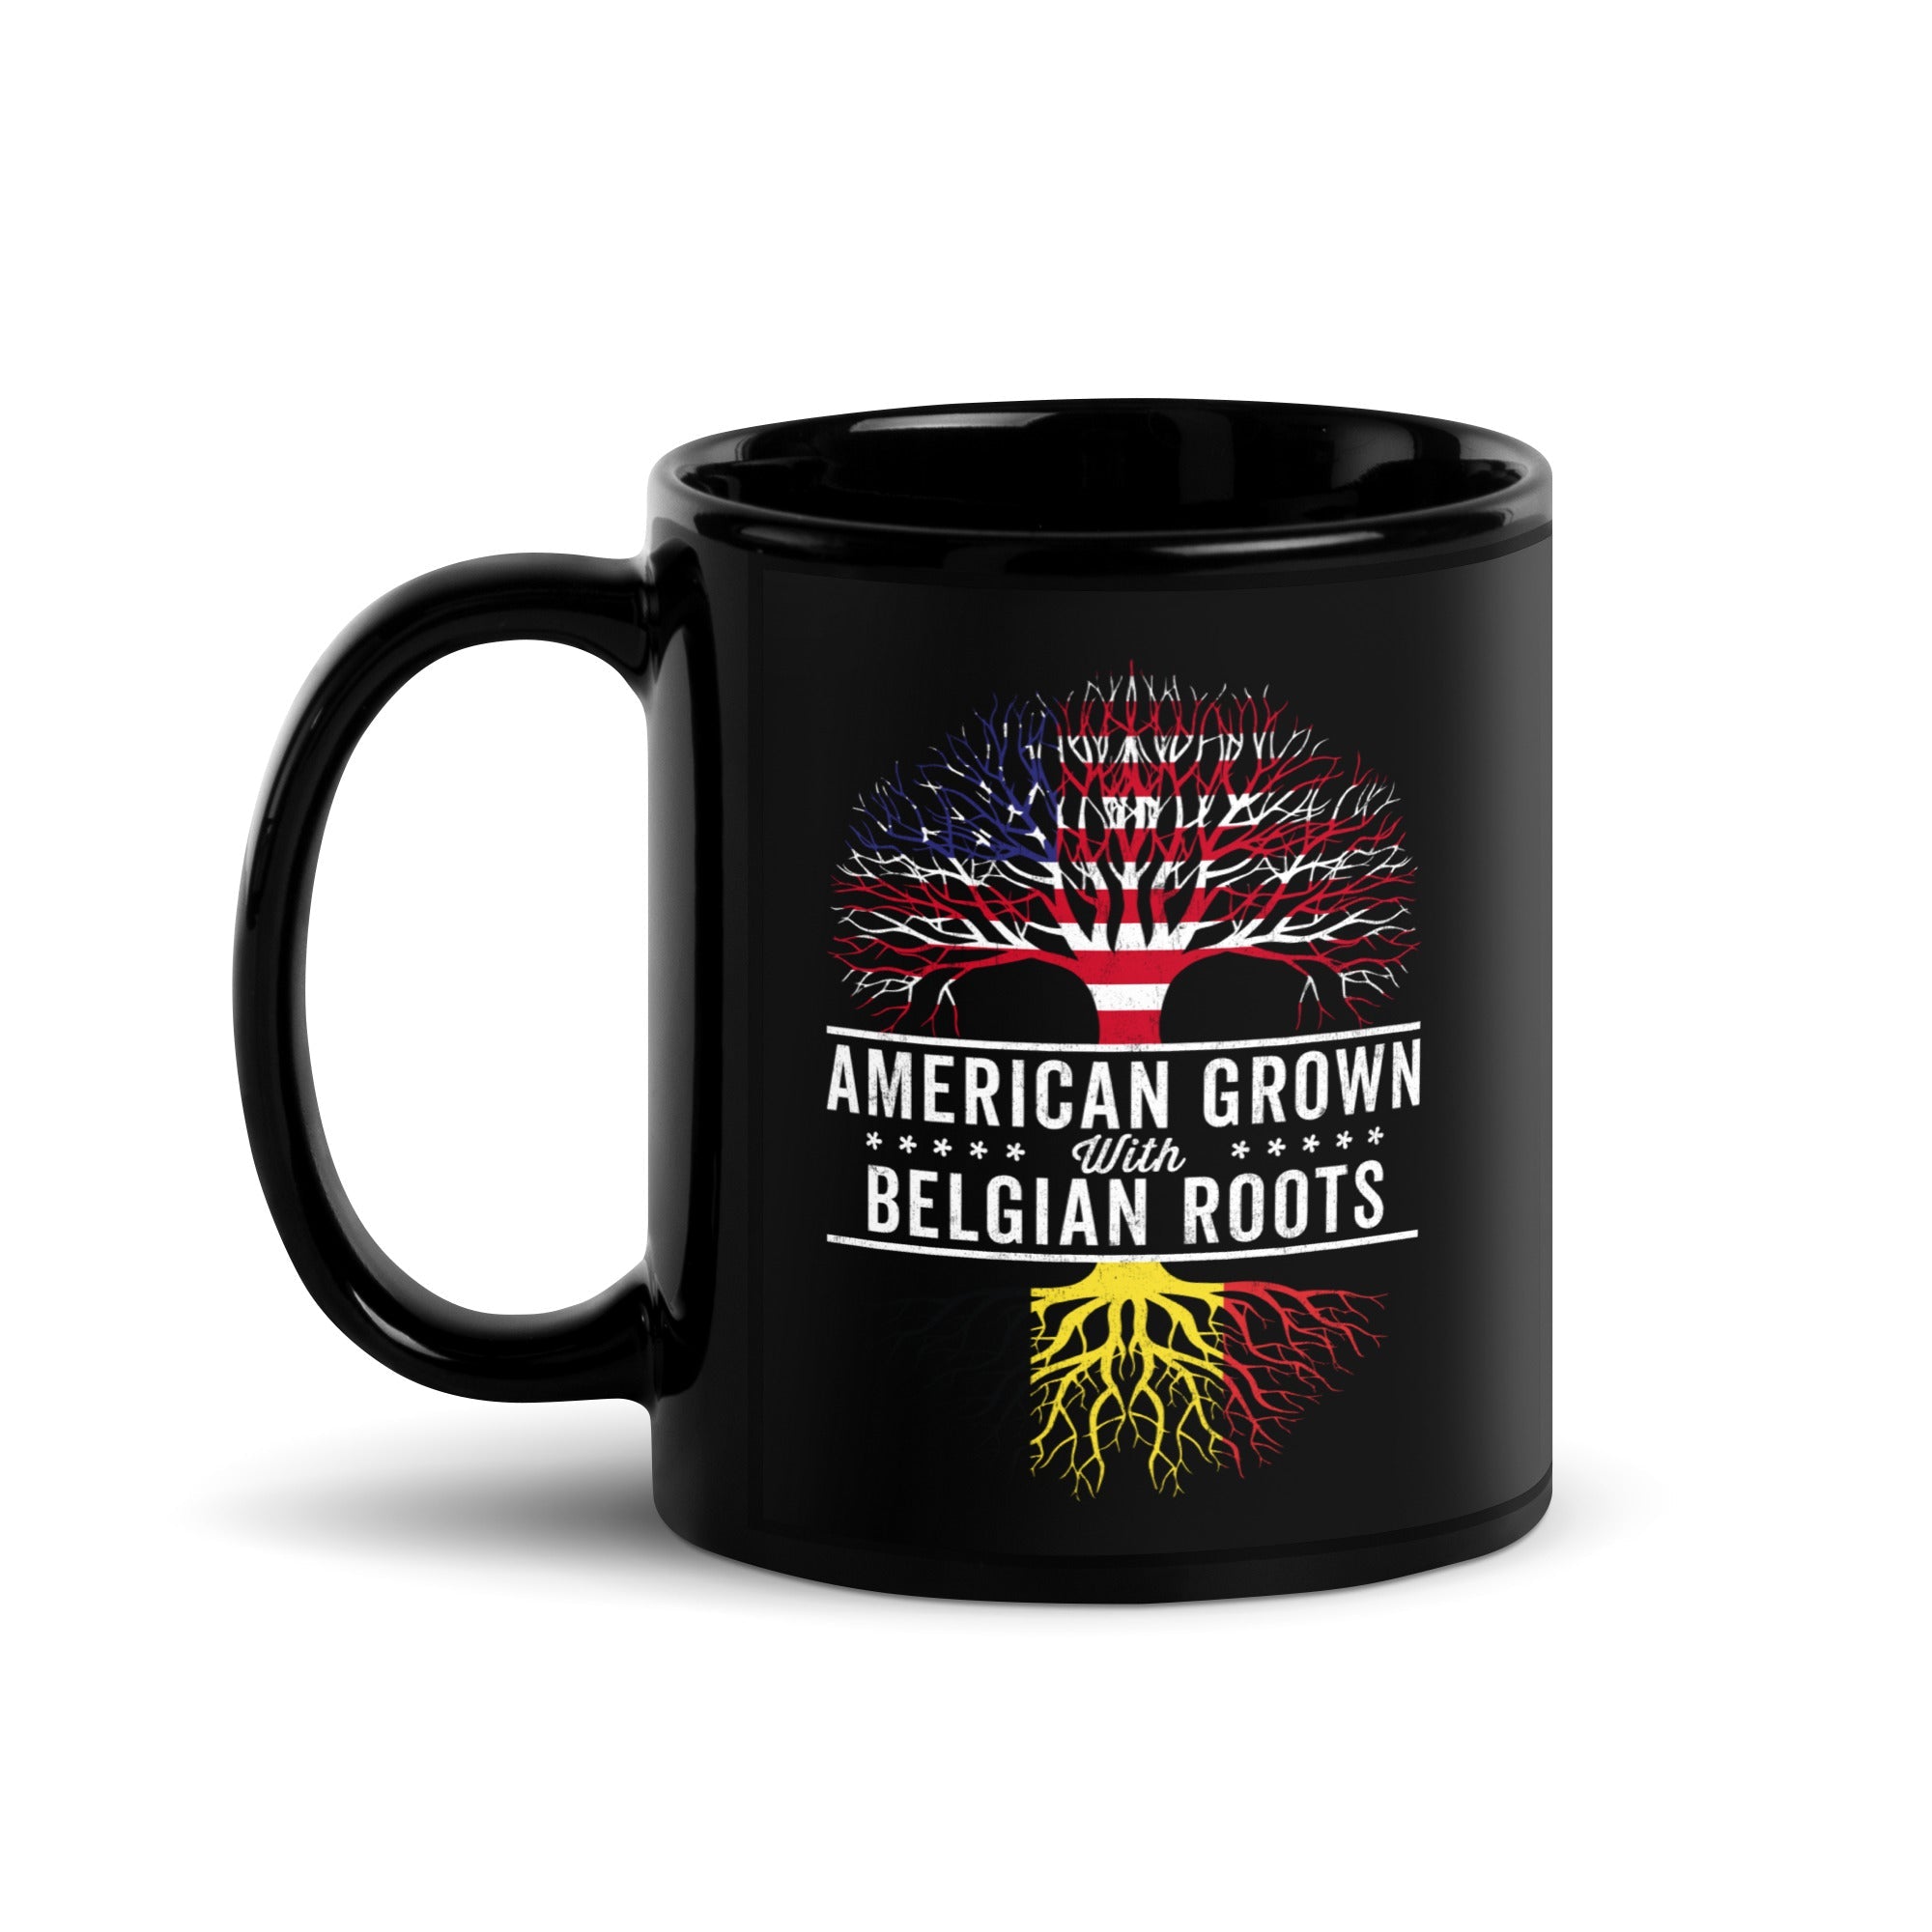 American Grown Belgian Roots Flag Mug